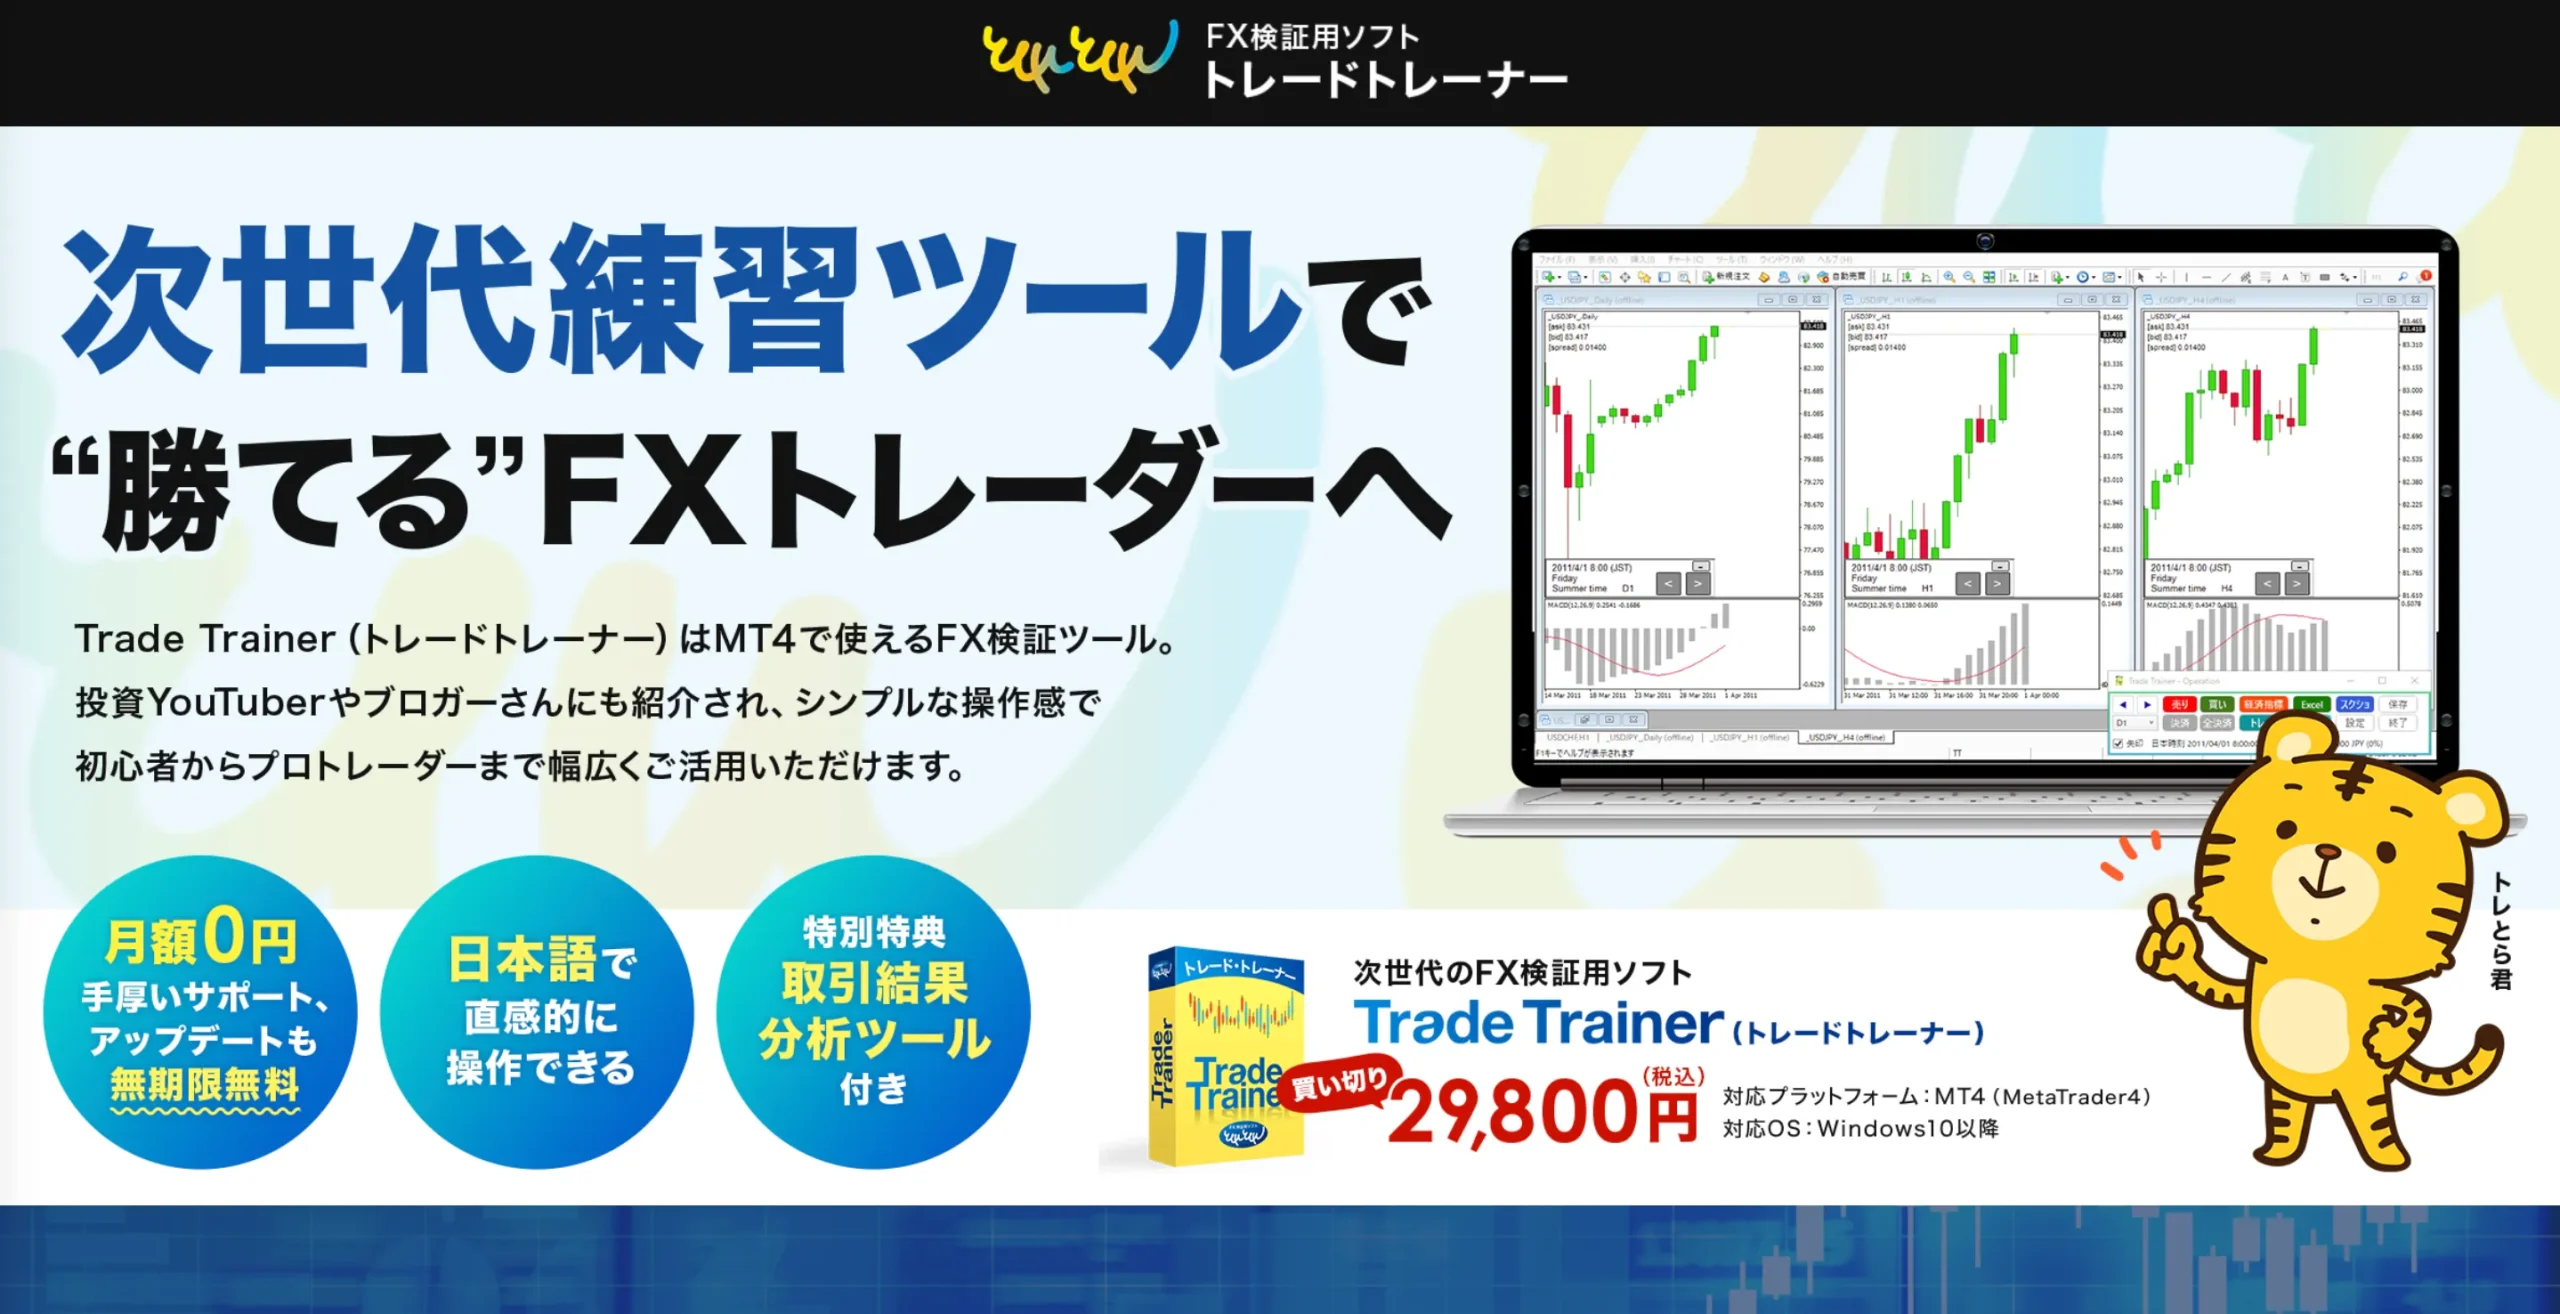 Trade Trainer　FX検証用ソフト